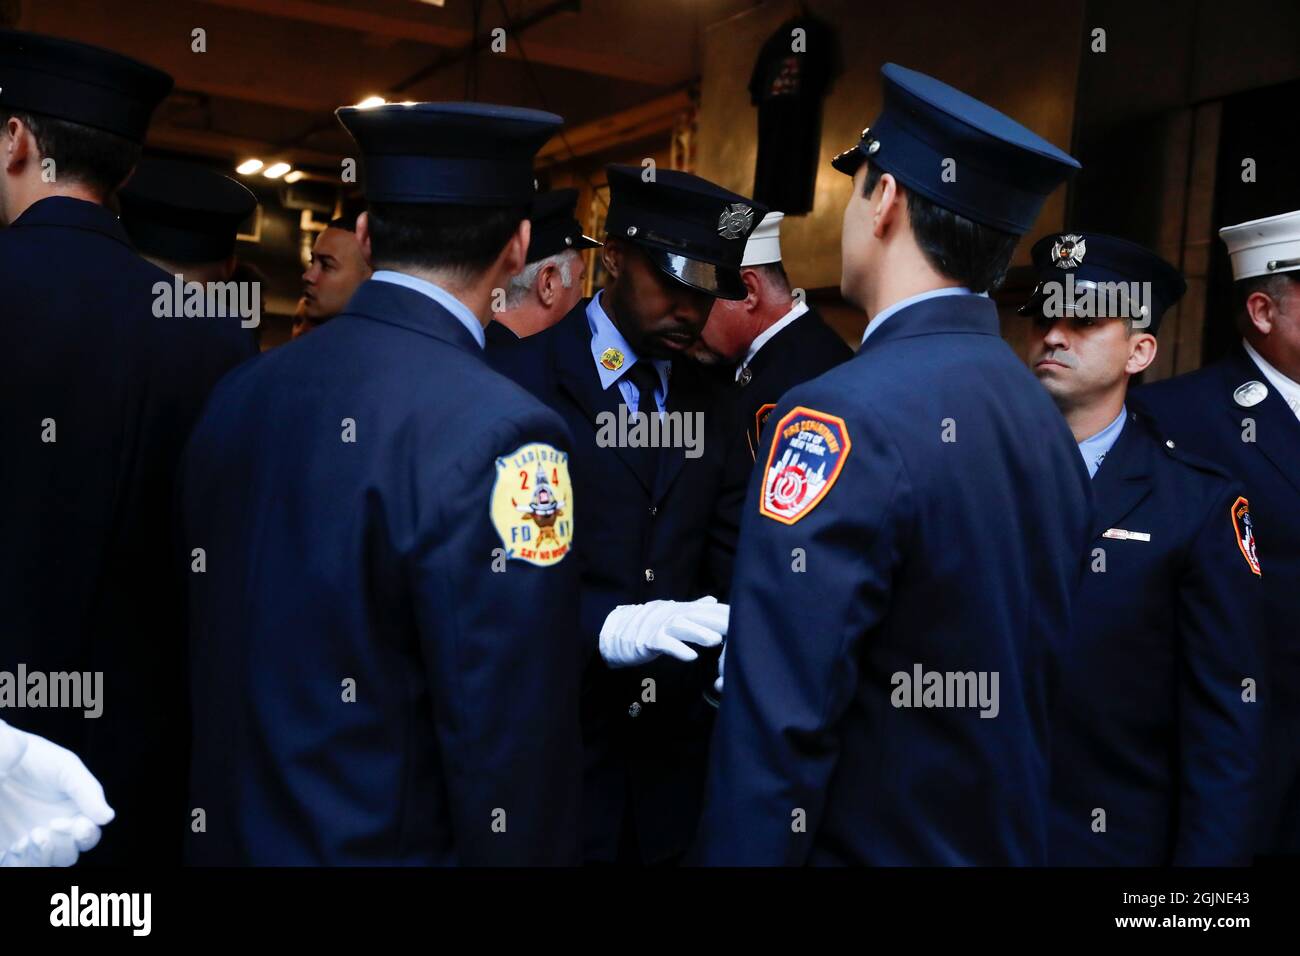 Les pompiers assistent à une cérémonie marquant le 20e anniversaire des attaques du 11 septembre 2001, au foyer de pompiers FDNY Engine 1/Ladder 24 à New York City, New York, États-Unis, le 11 septembre 2021. Cette photo a été prise à 8,46 h HAE le 11 septembre 2021, exactement 20 ans après que le premier avion ait heurté la Tour Nord du World Trade Center à New York. REUTERS/Shannon Stapleton Banque D'Images